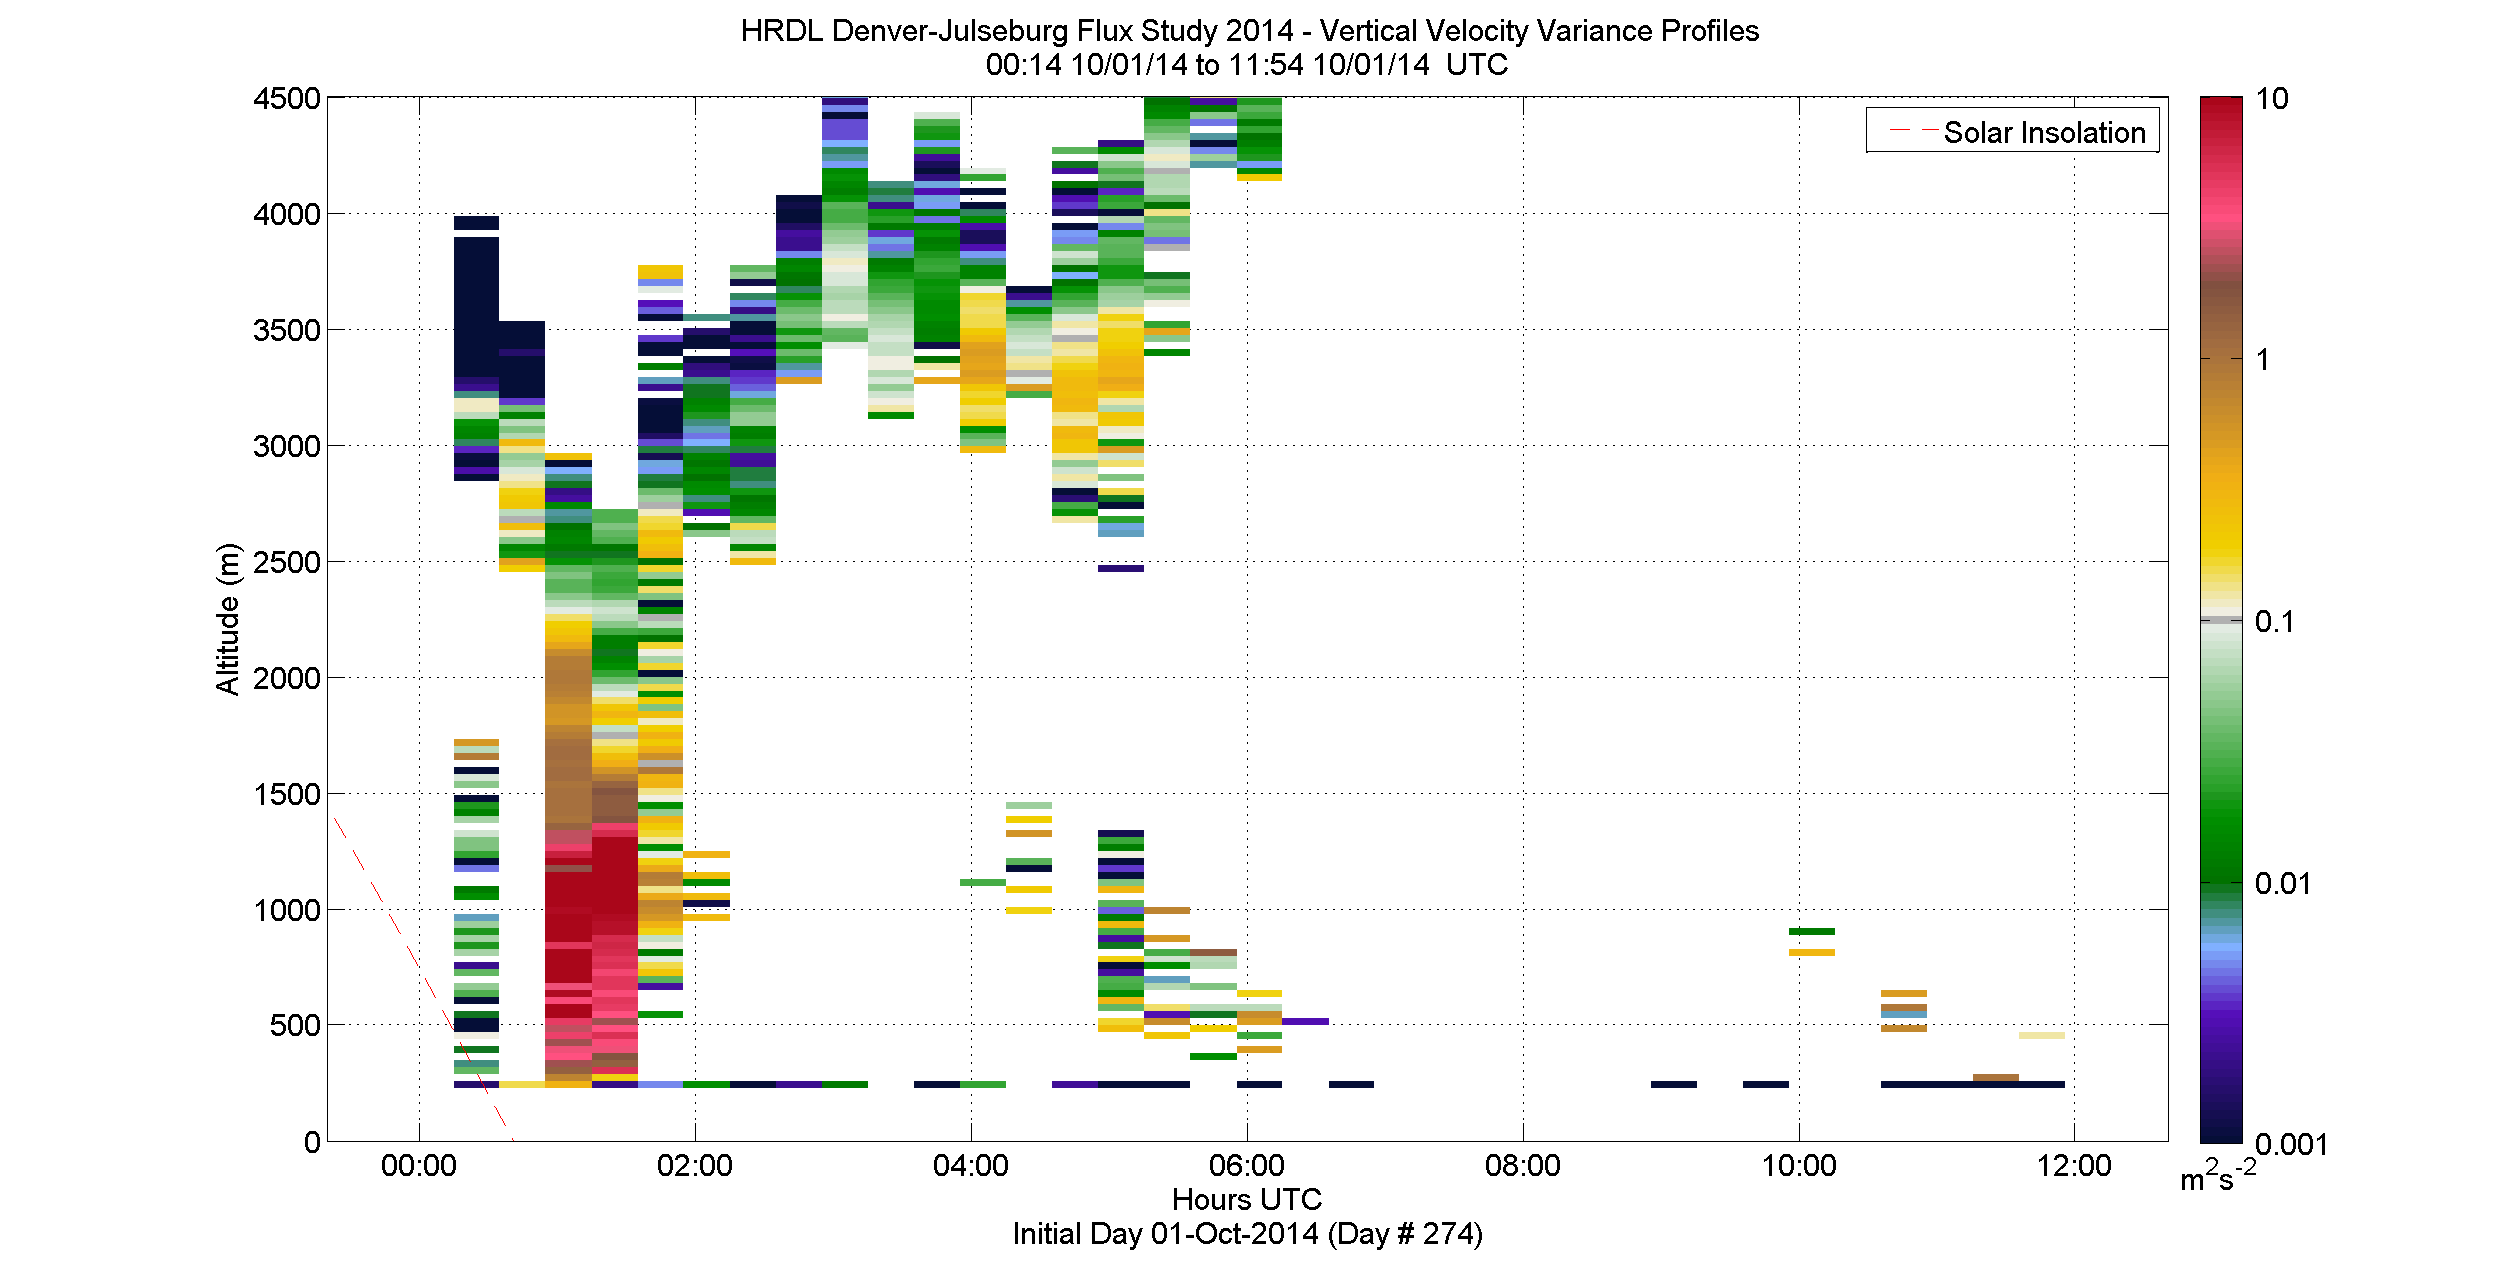 HRDL vertical variance profile - October 1 am